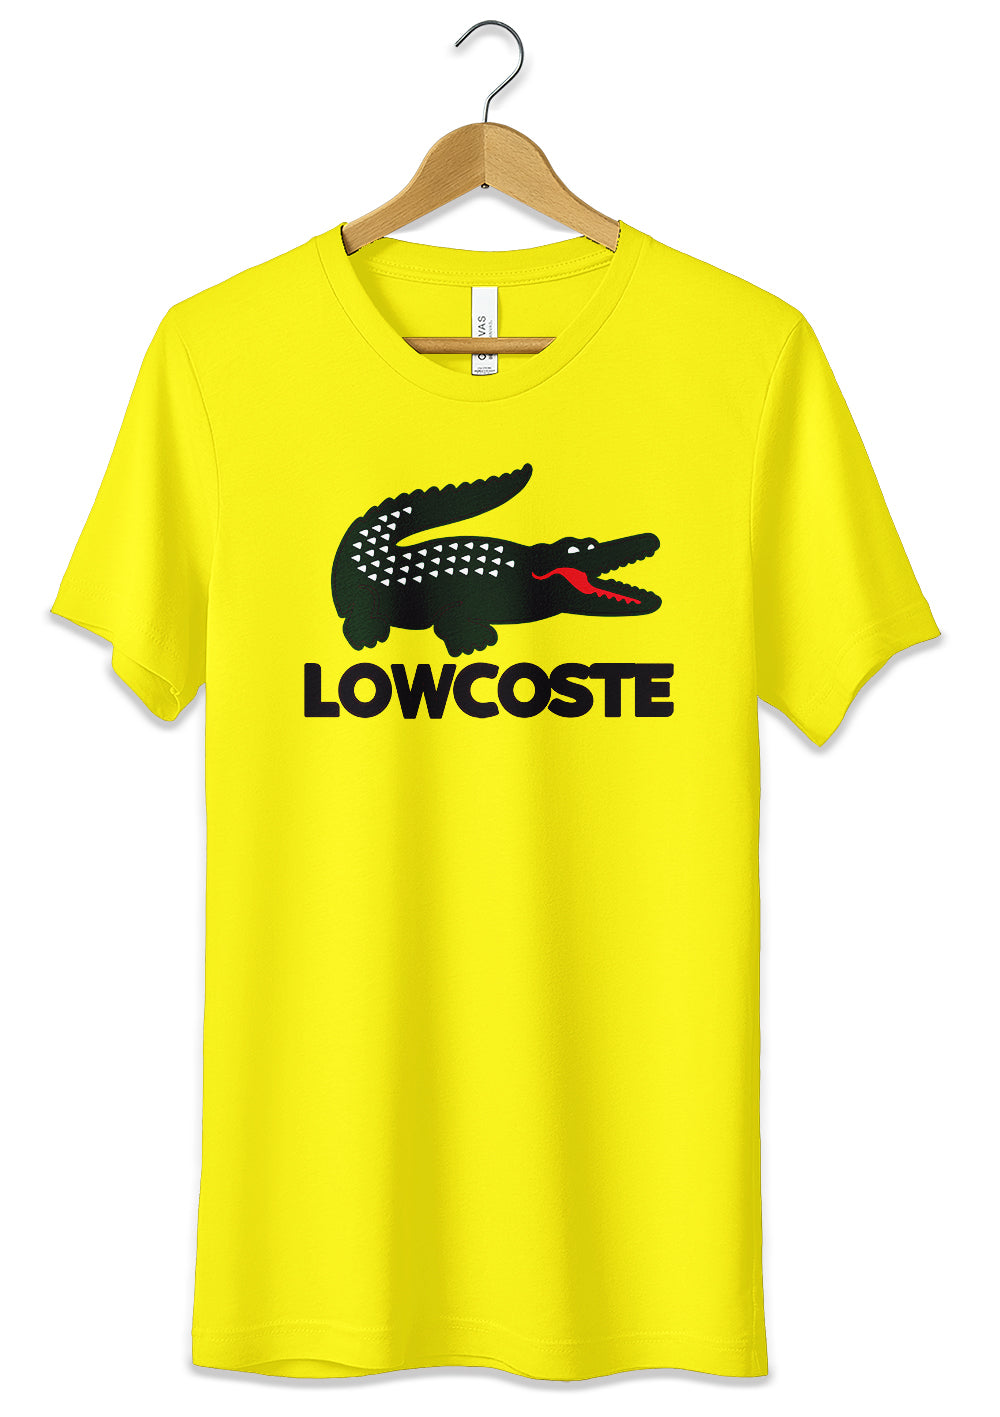 T-Shirt Funny Lowcost Maglietta 100% Cotone Idea Regalo T-Shirt CmrDesignStore 3/4 anni Giallo 